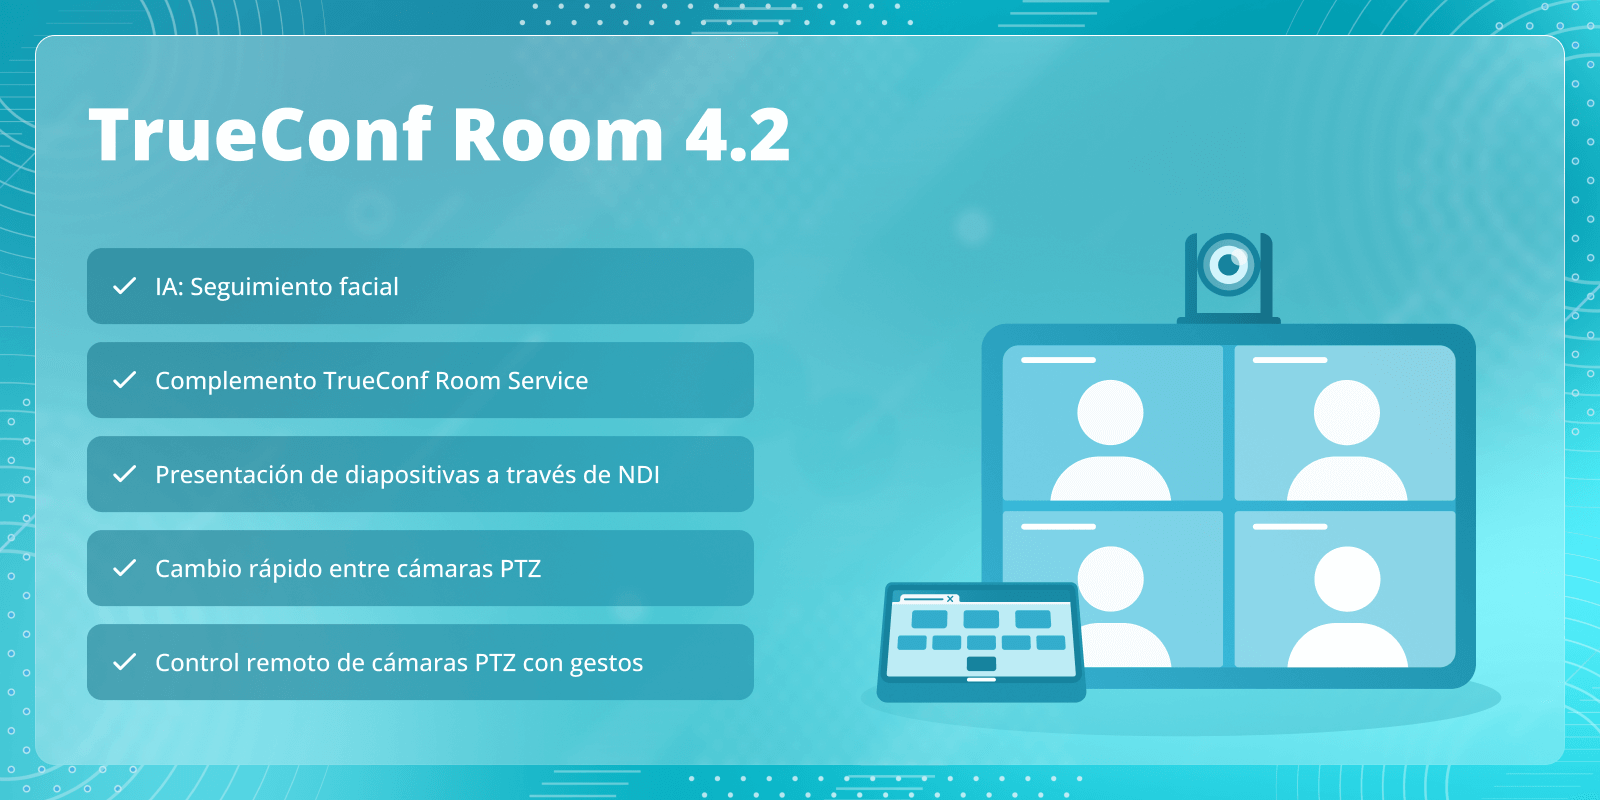 TrueConf Room 4.2: Complemento TrueConf Room Service y seguimiento facial 2